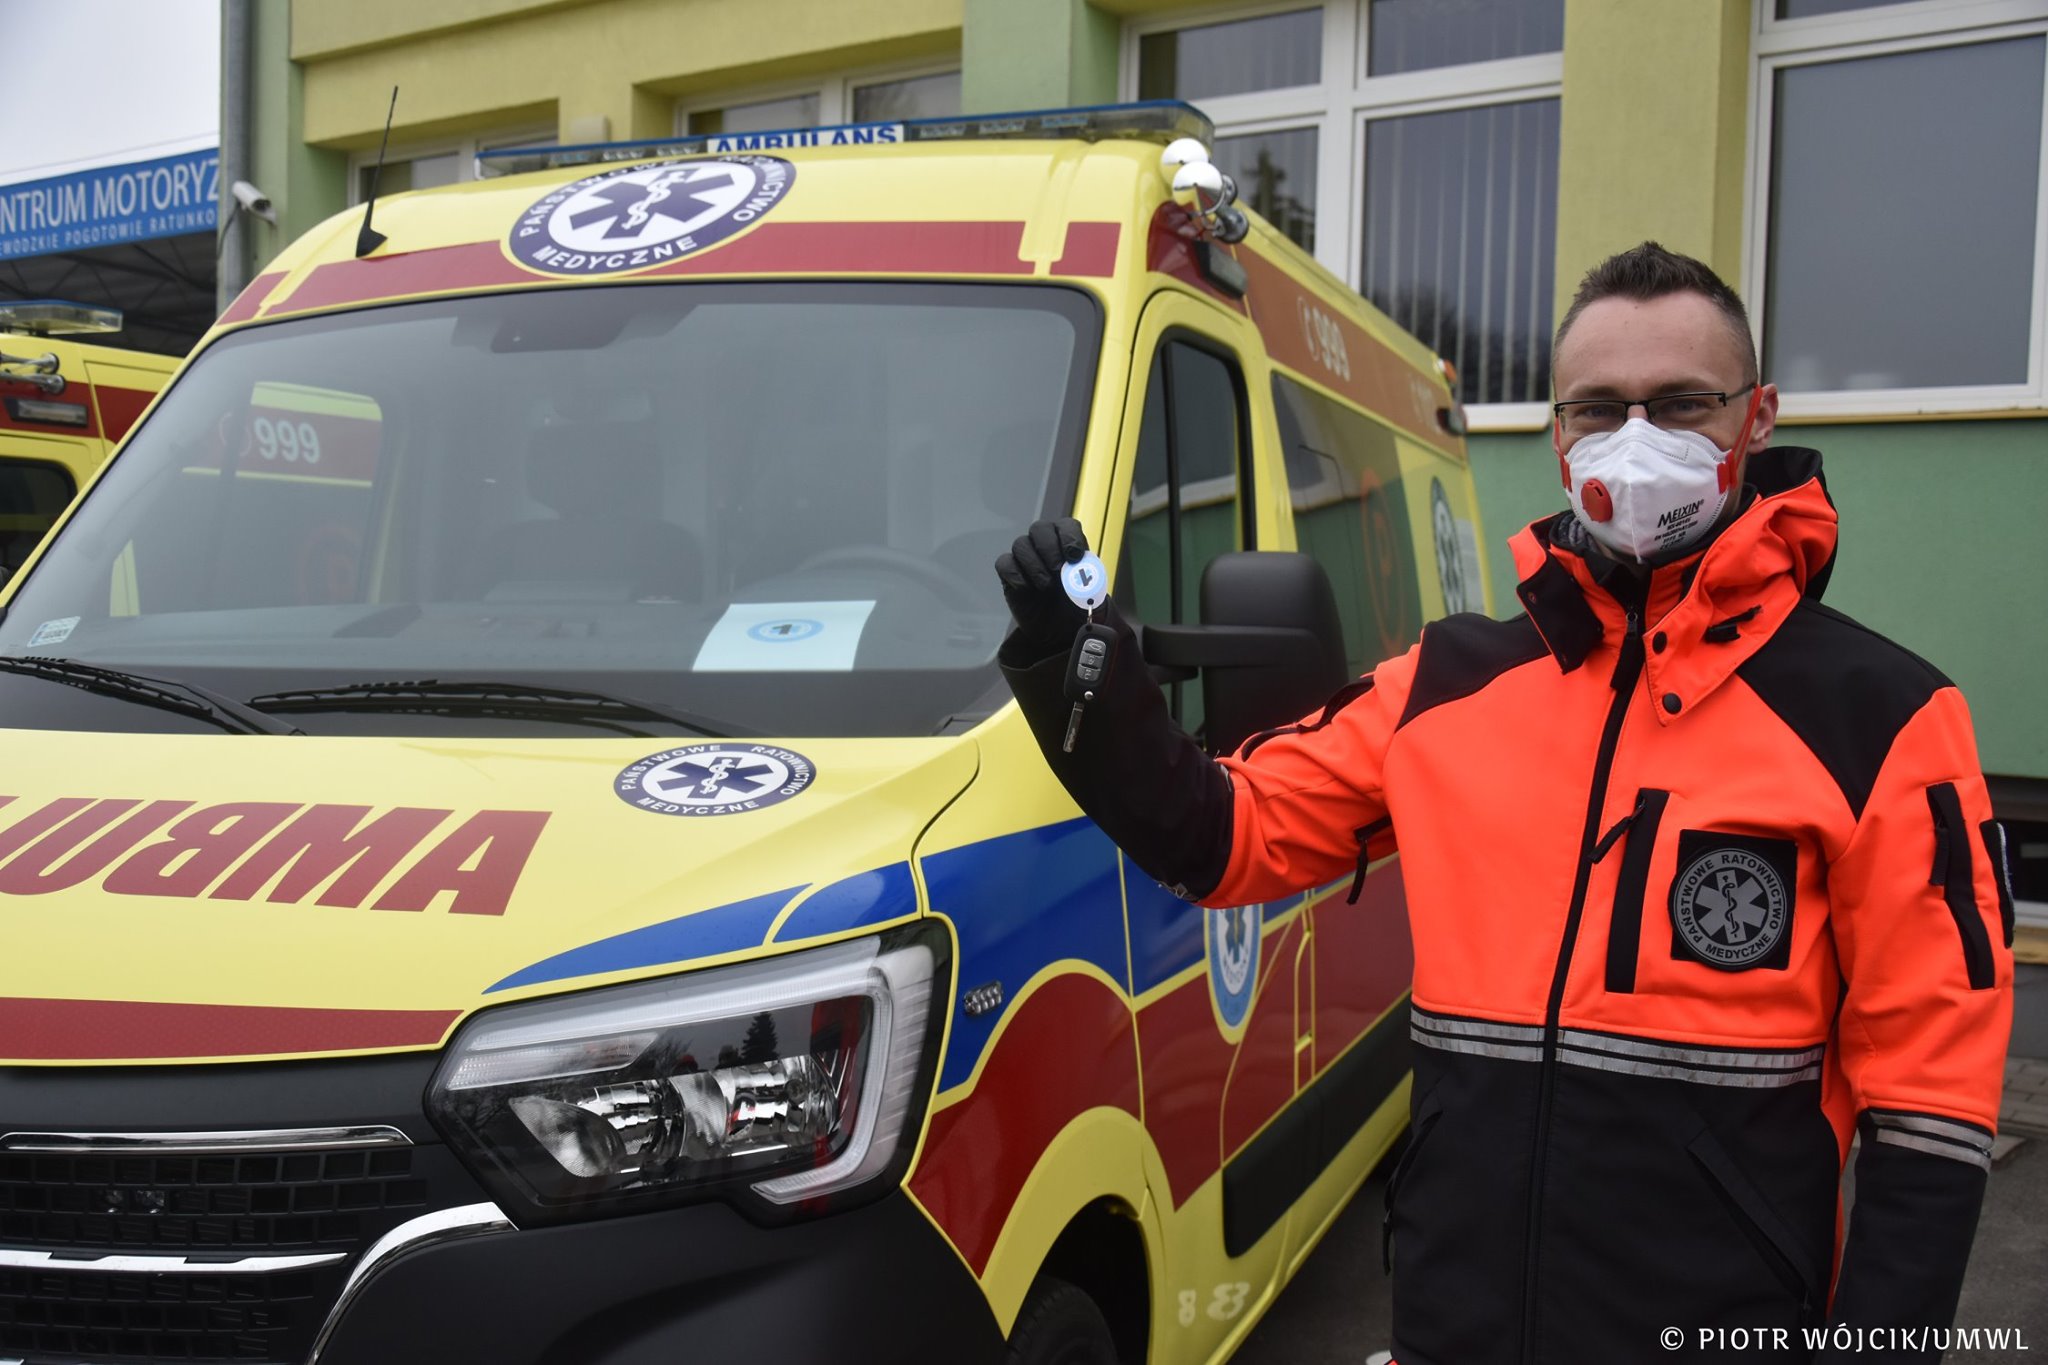 Lubelskie pogotowie ratunkowe otrzymało nowe ambulanse. Będą woziły pacjentów chorych na Covid-19 (zdjęcia)